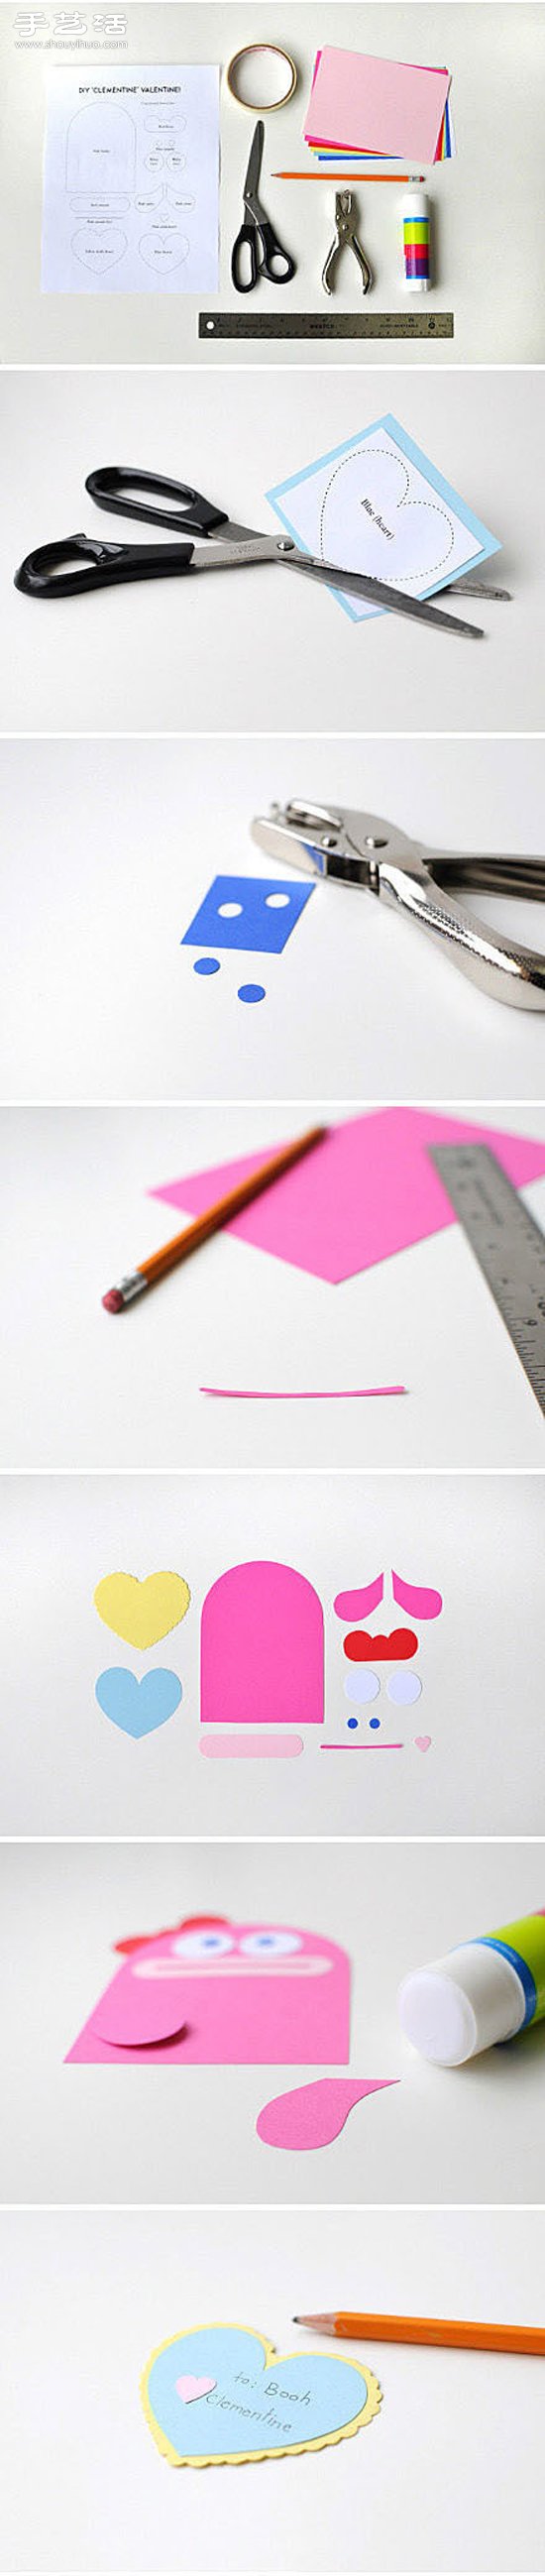 卡纸剪纸手工制作可爱动物心形便签图解教程